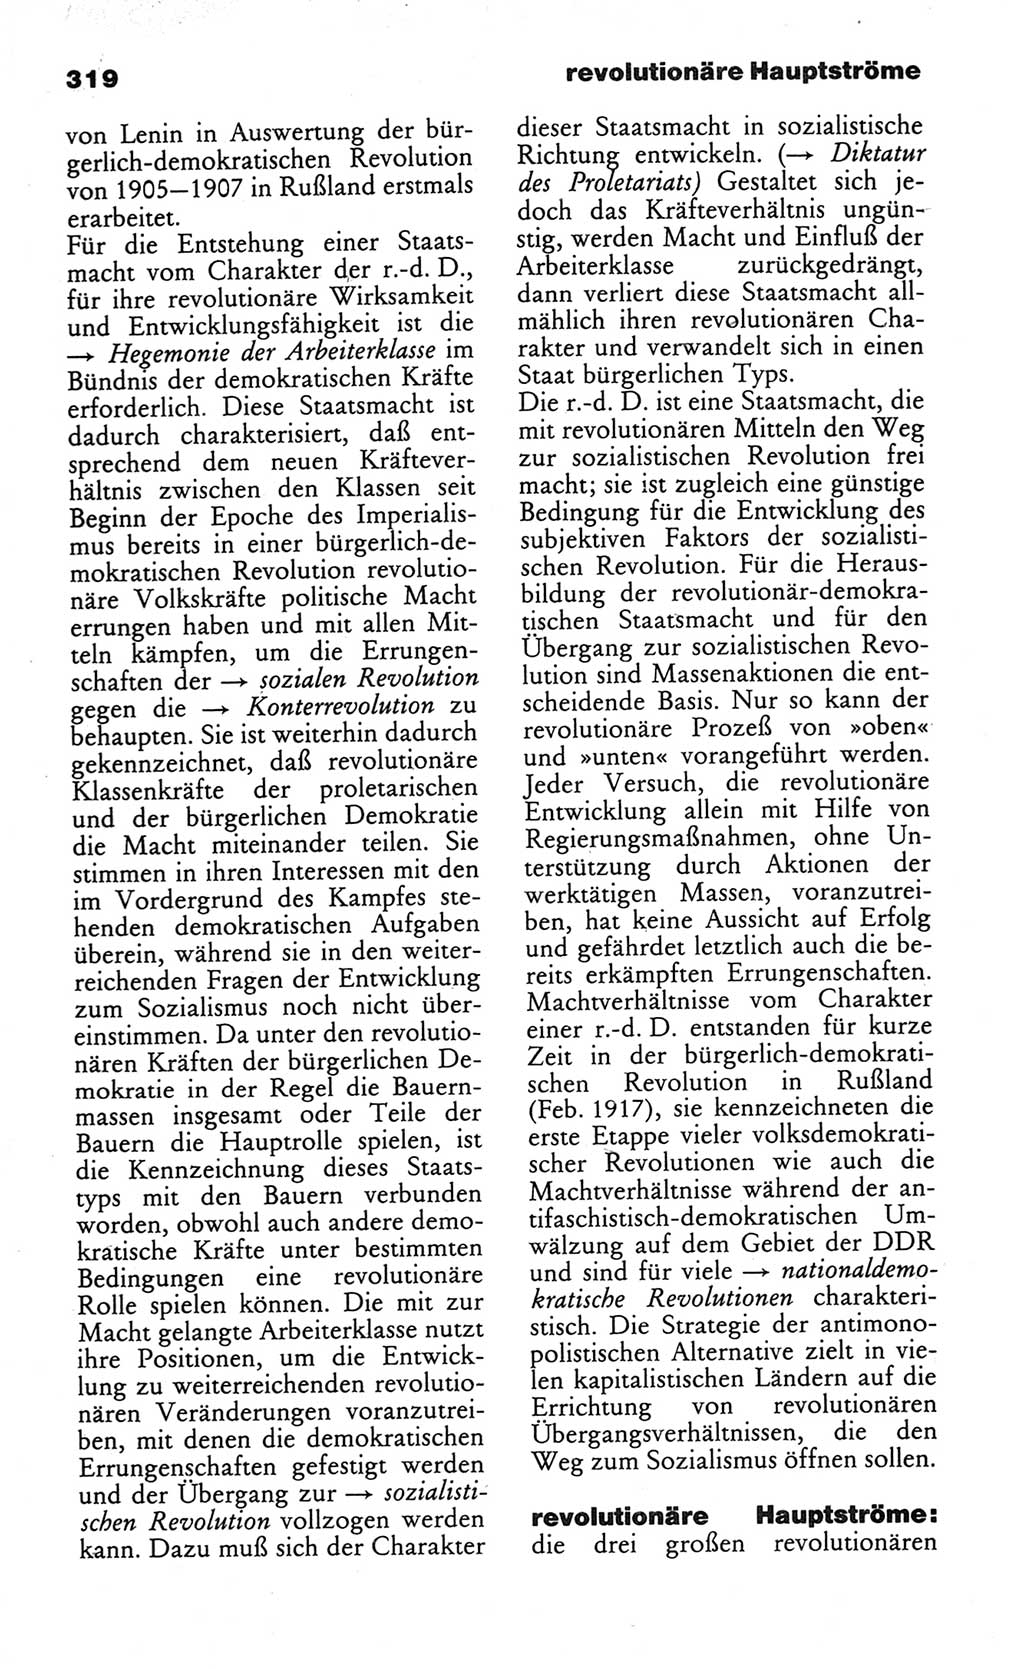 Wörterbuch des wissenschaftlichen Kommunismus [Deutsche Demokratische Republik (DDR)] 1984, Seite 319 (Wb. wiss. Komm. DDR 1984, S. 319)